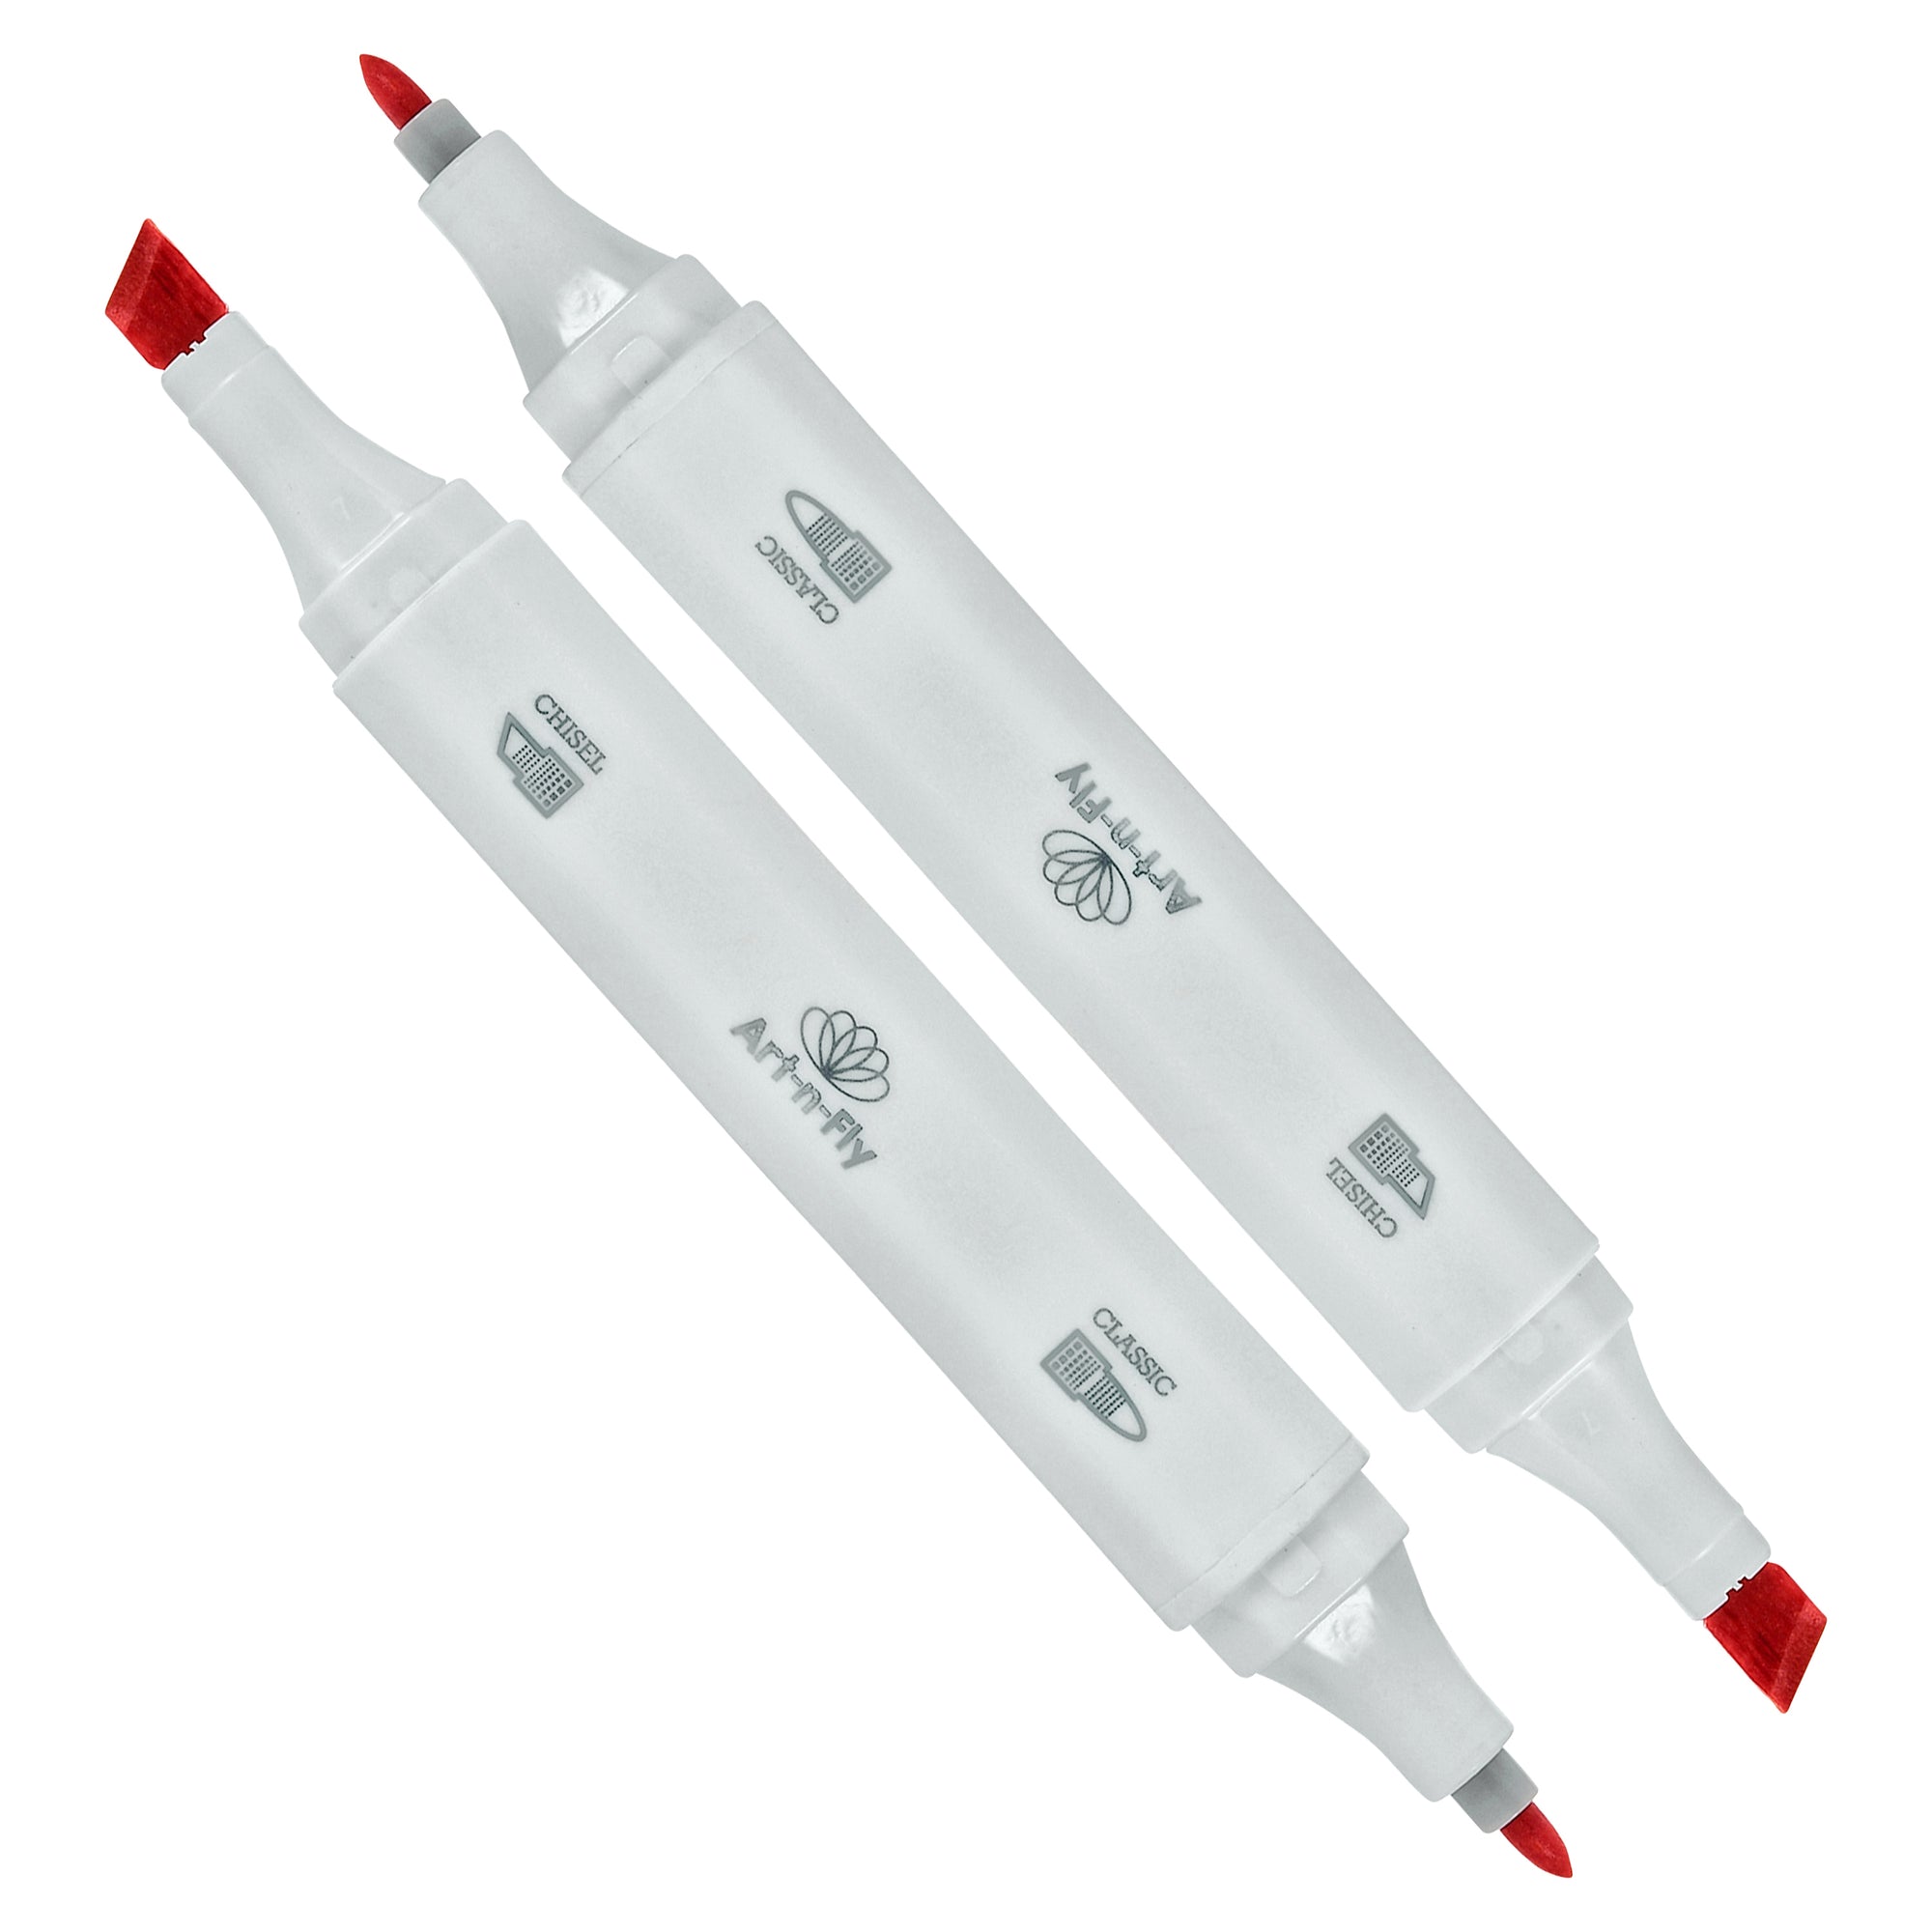 Dual tip Sketch markers for illustration with blender marker - Art-n-Fly